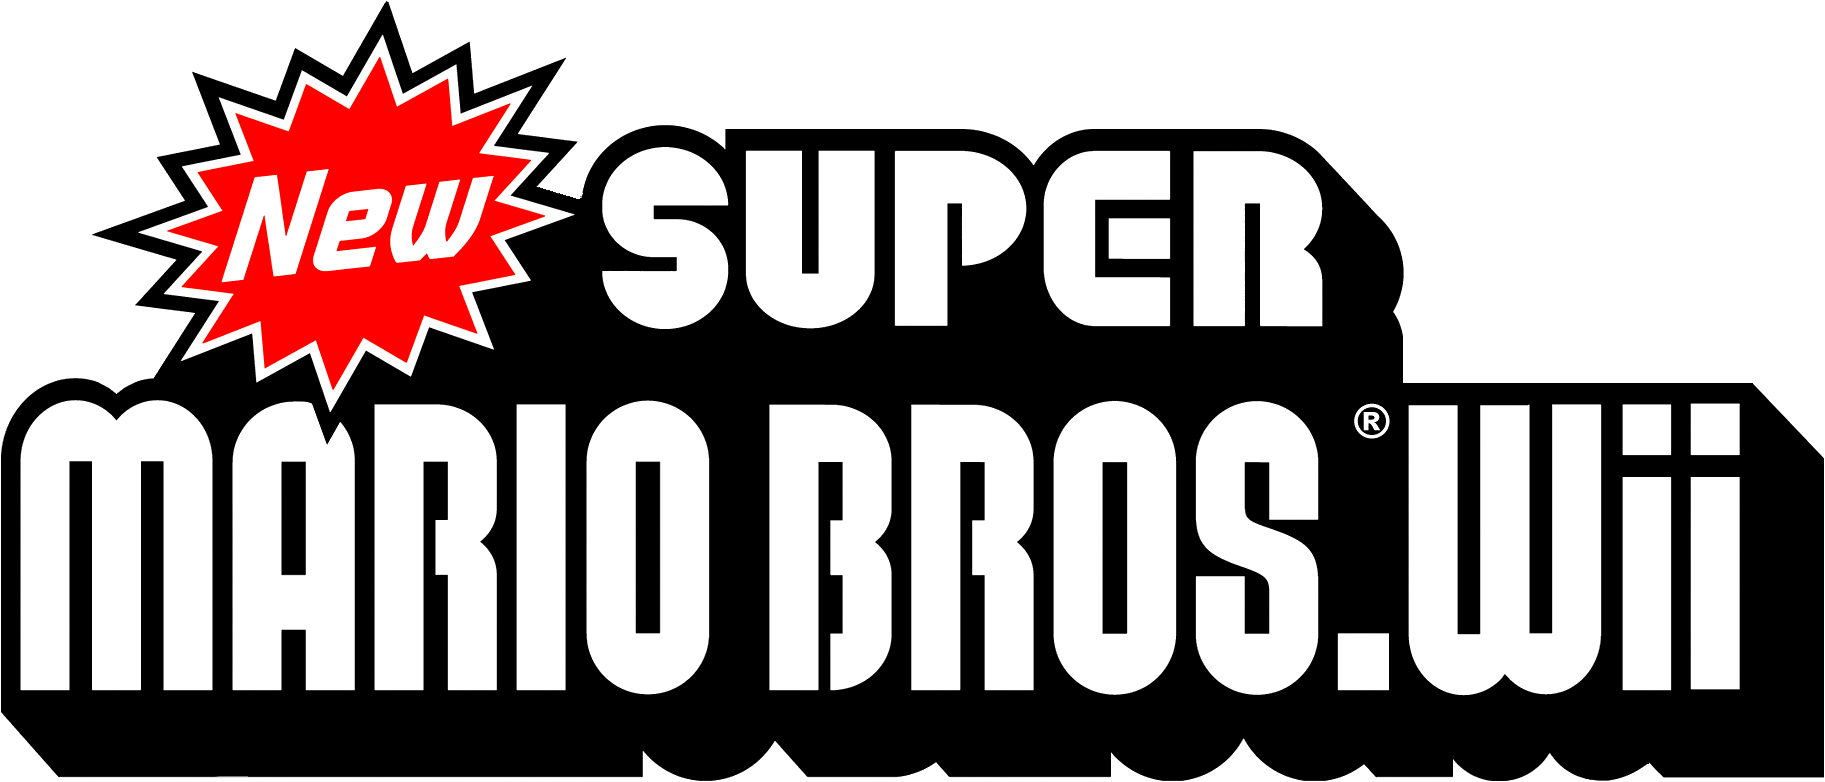 New Super Mario Bros. Logo - New super mario bros Logos